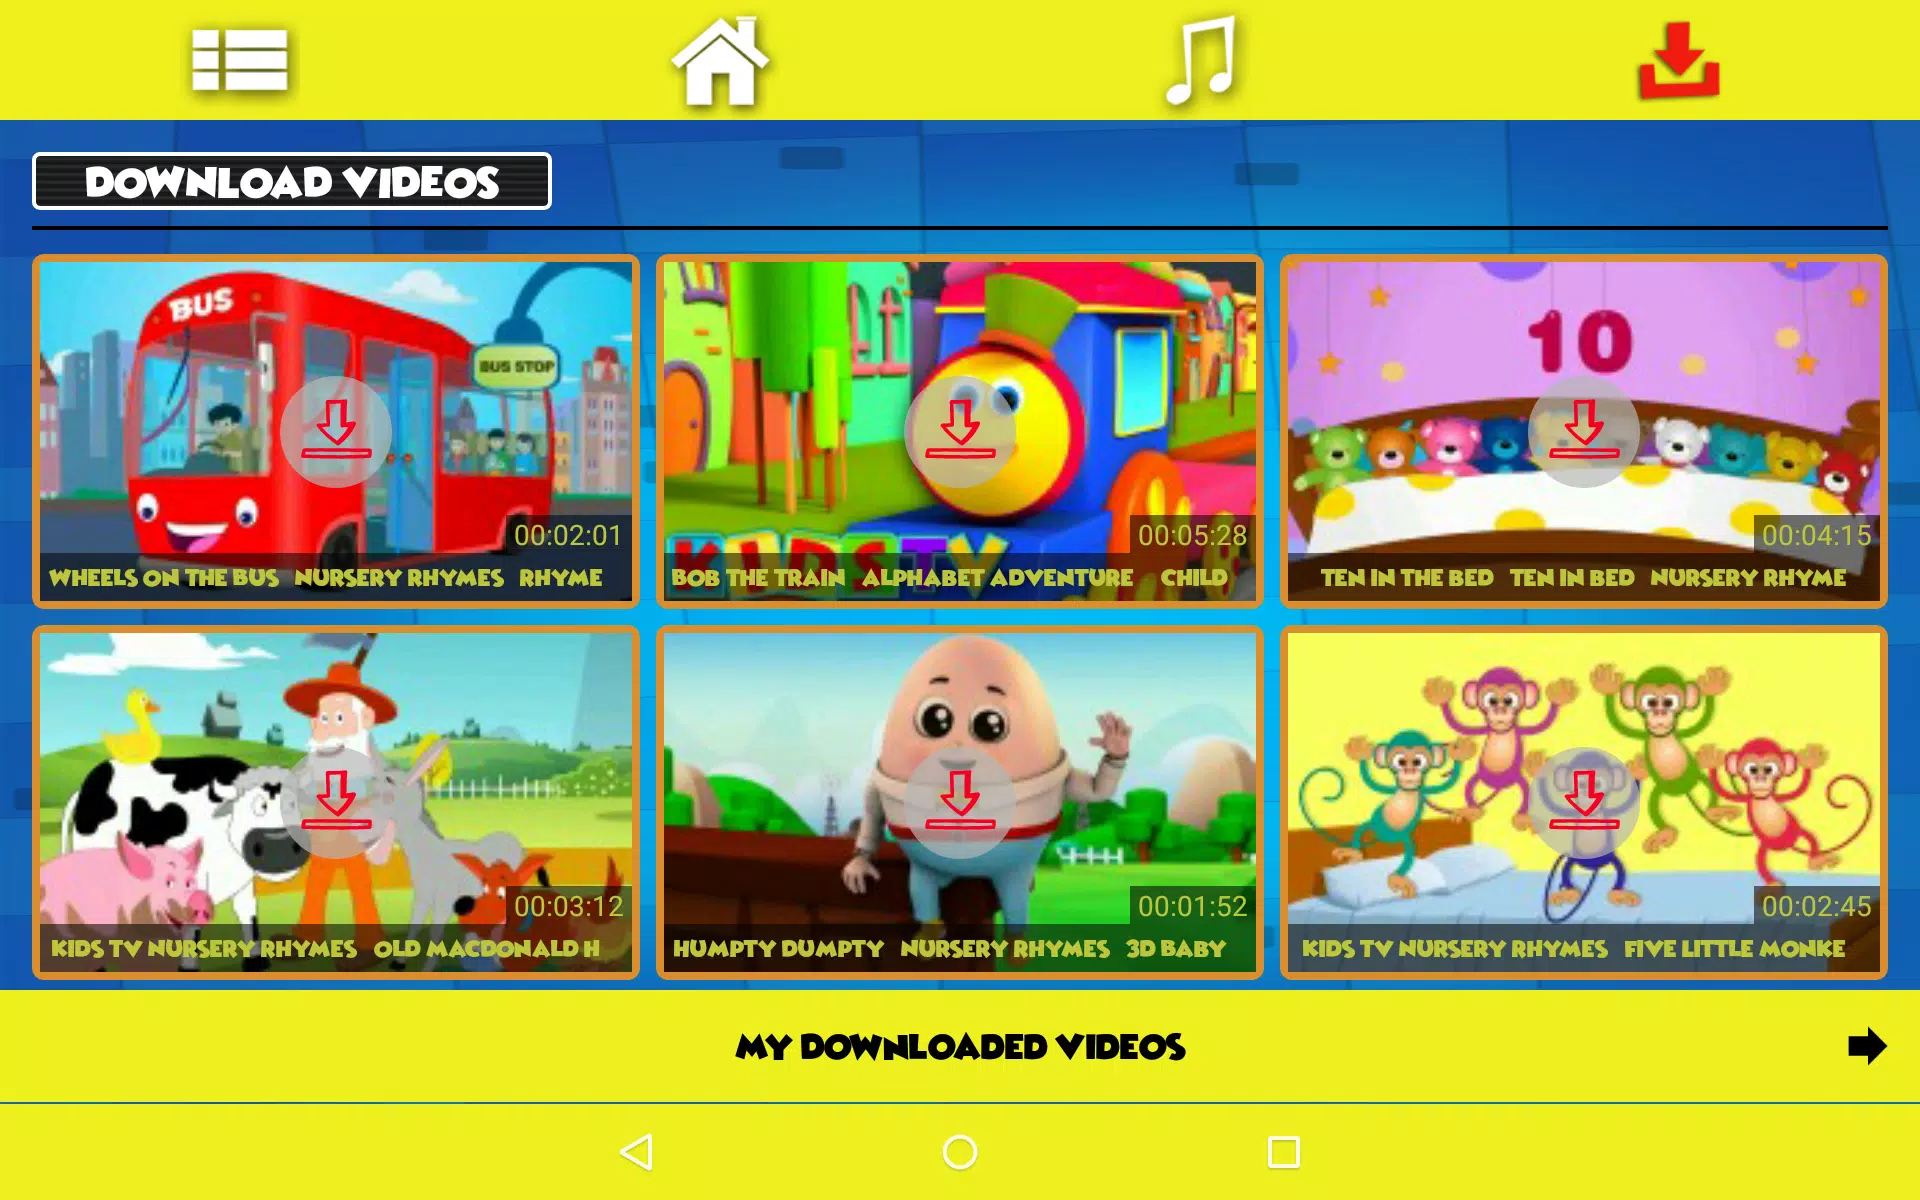 Kids Videos & Nursery Rhymes   Kids First für Android   APK ...